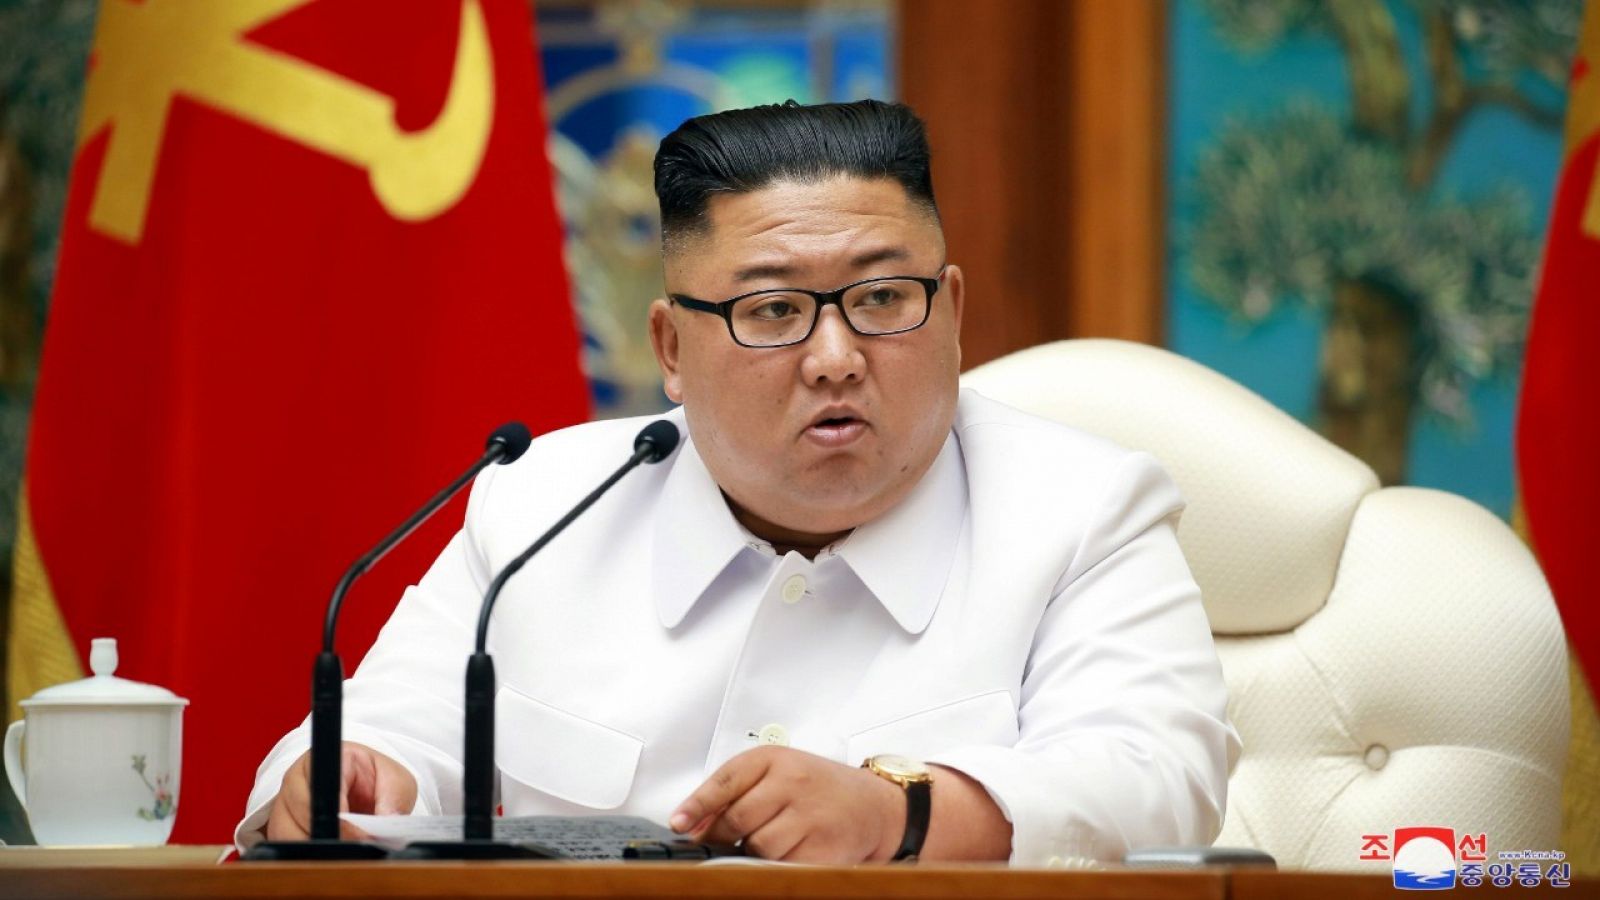 El líder norcoreano, Kim Jong-un. durante una reunión de emergencia del Buró Político del Comité Central del Partido de los Trabajadores de Corea (PTC).